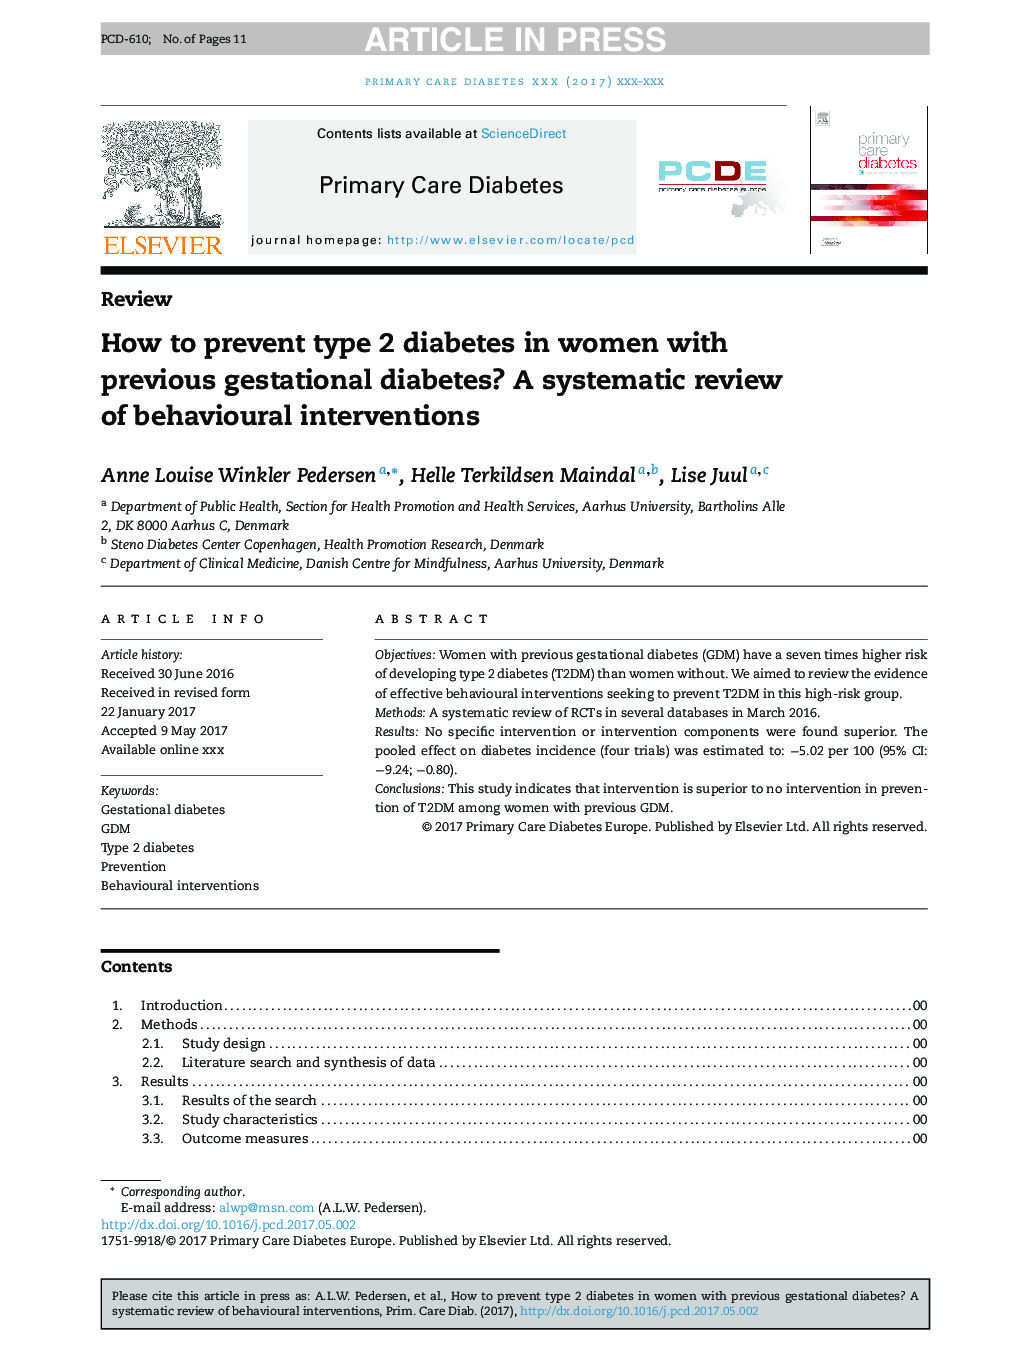 چگونه برای جلوگیری از دیابت نوع 2 در زنان مبتلا به دیابت بارداری قبلی؟ بررسی سیستماتیک مداخلات رفتاری 